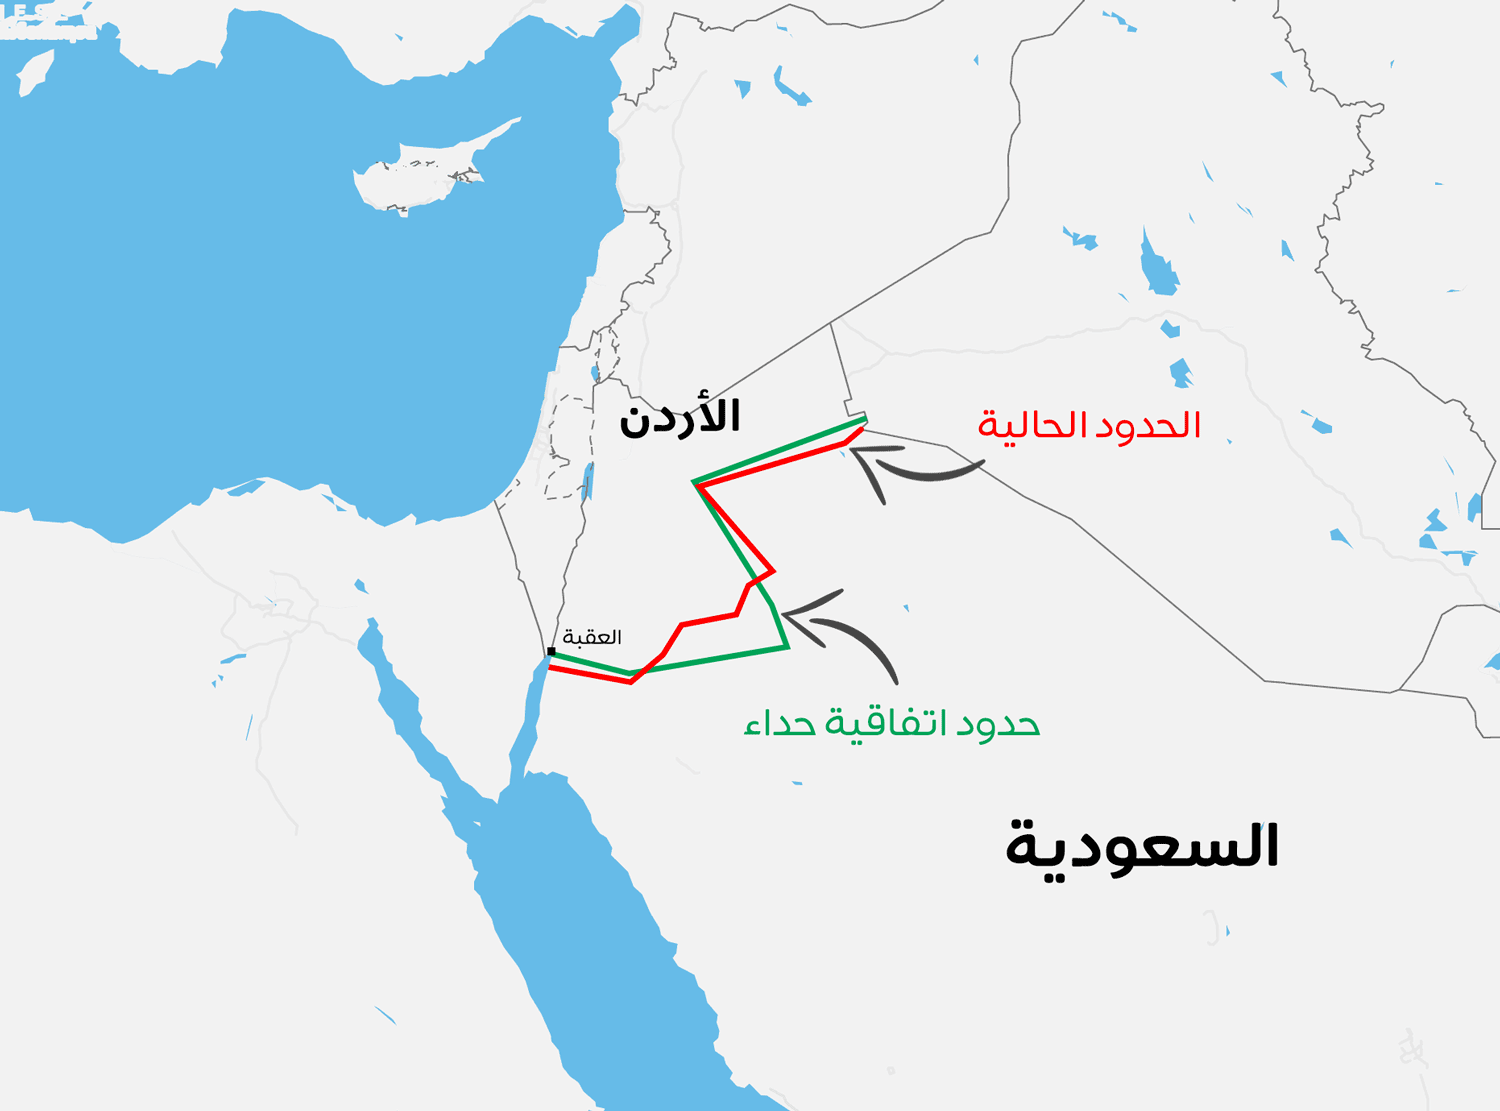 كيف تم رسم الحدود الأردنية السعودية ولماذا تبدو كخط منكسر ومتعرج عكس الحدود العربية الأخرى في المنطقة